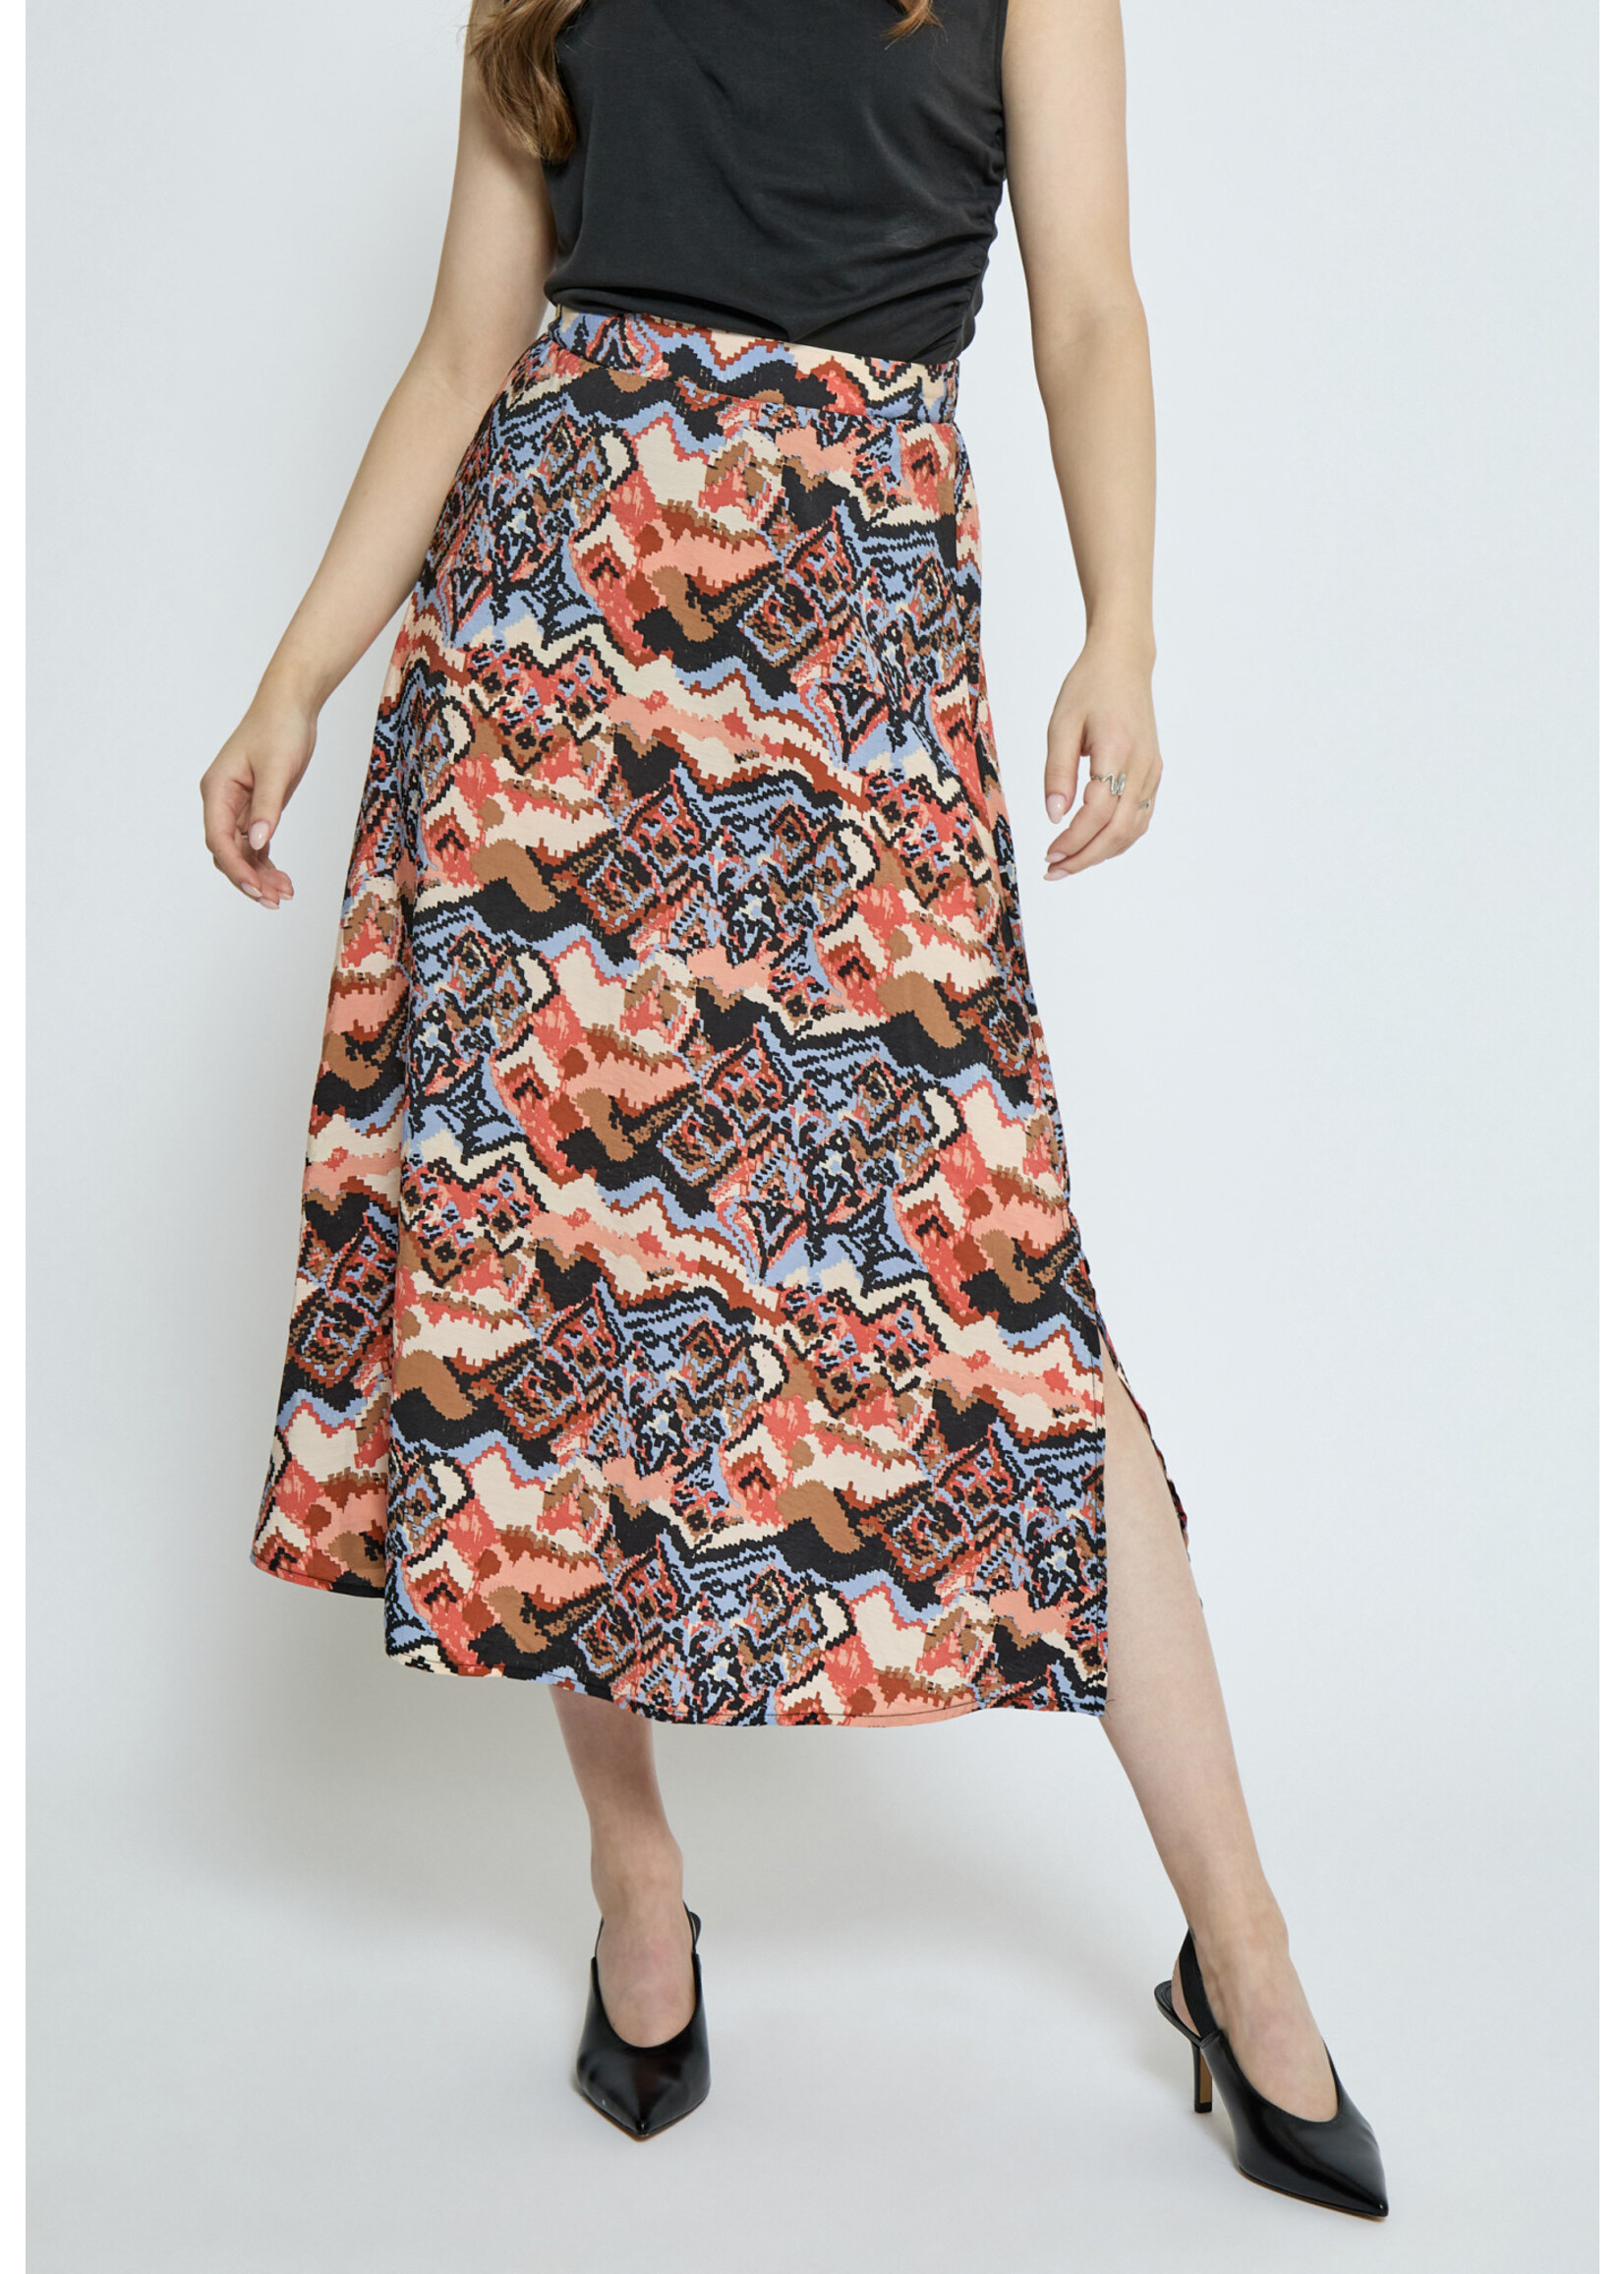 Minus Minus, MSCeleste Midi Skirt, Desert Sand, Size: